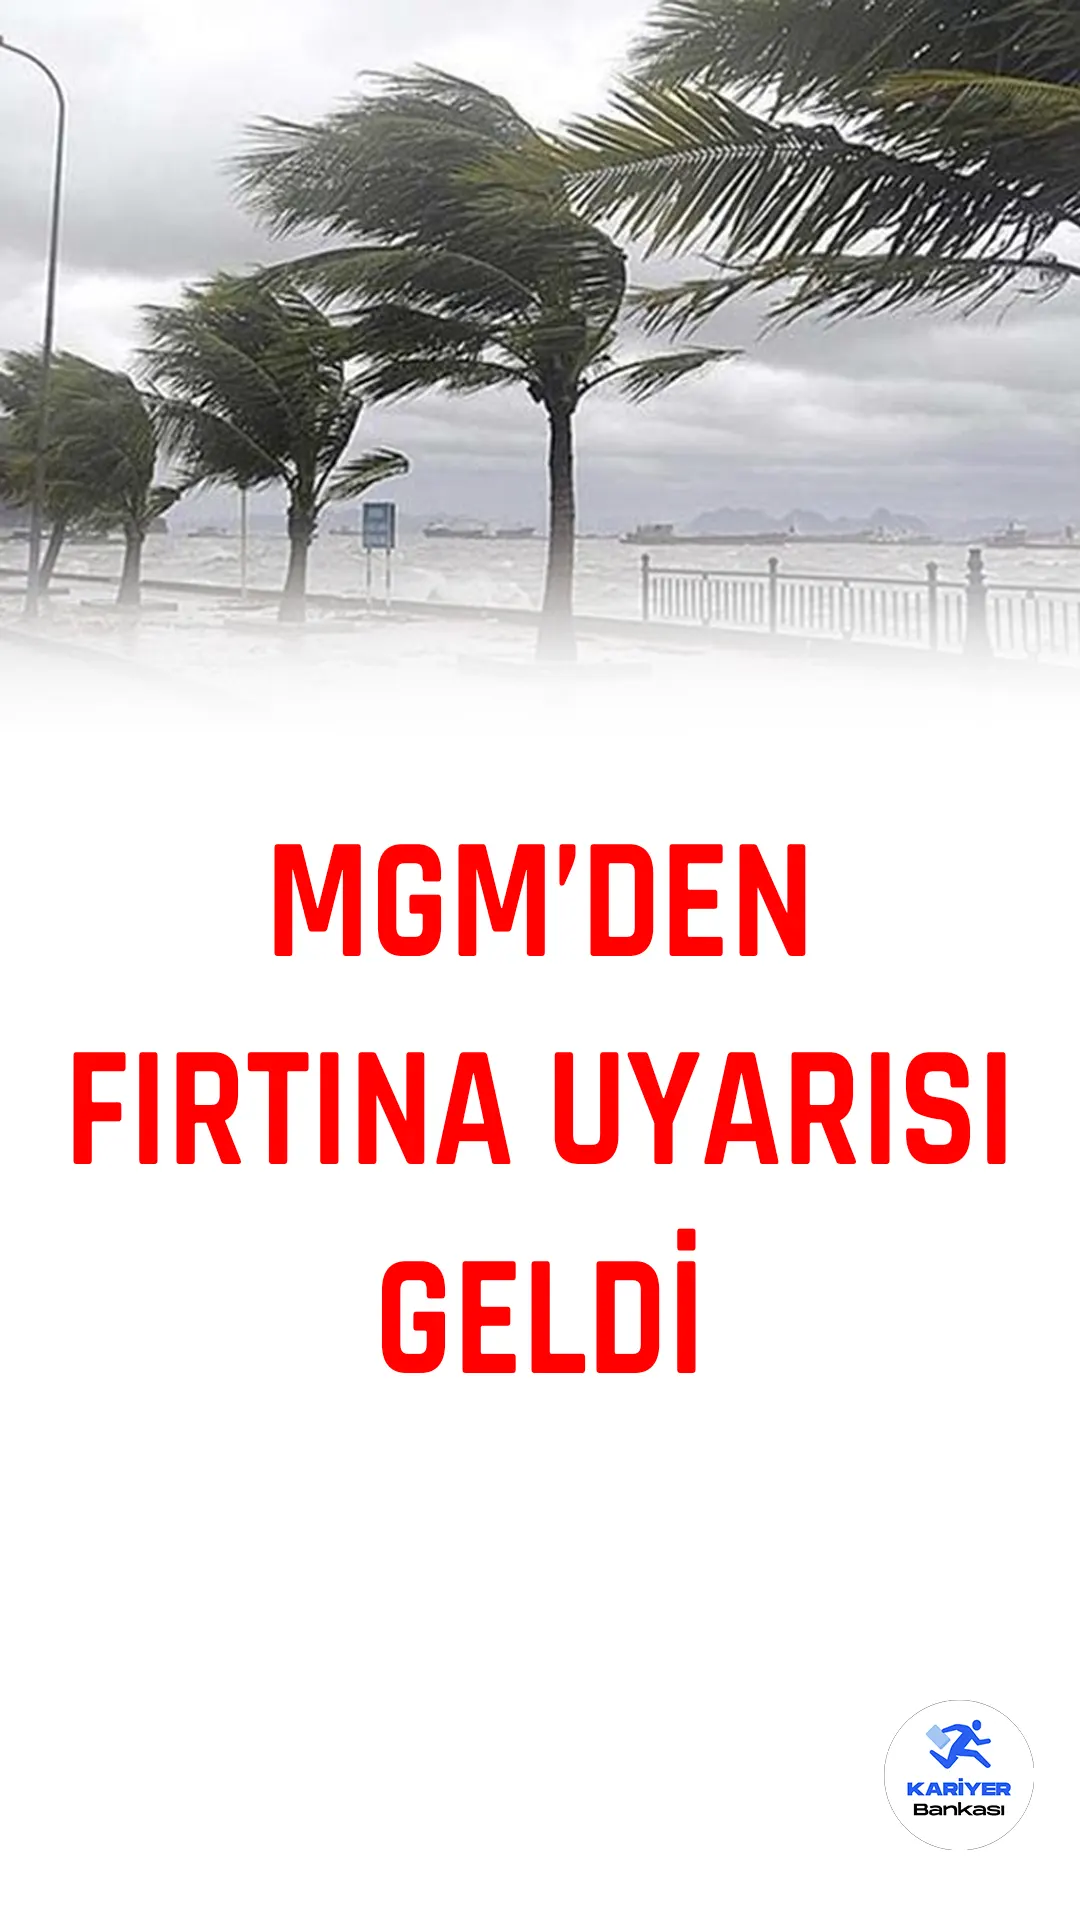 Meteoroloji 2. Bölge Müdürlüğü, İzmir genelinde bu gece yarısından sonra kuvvetli rüzgar ve fırtına beklentisi olduğunu açıkladı.